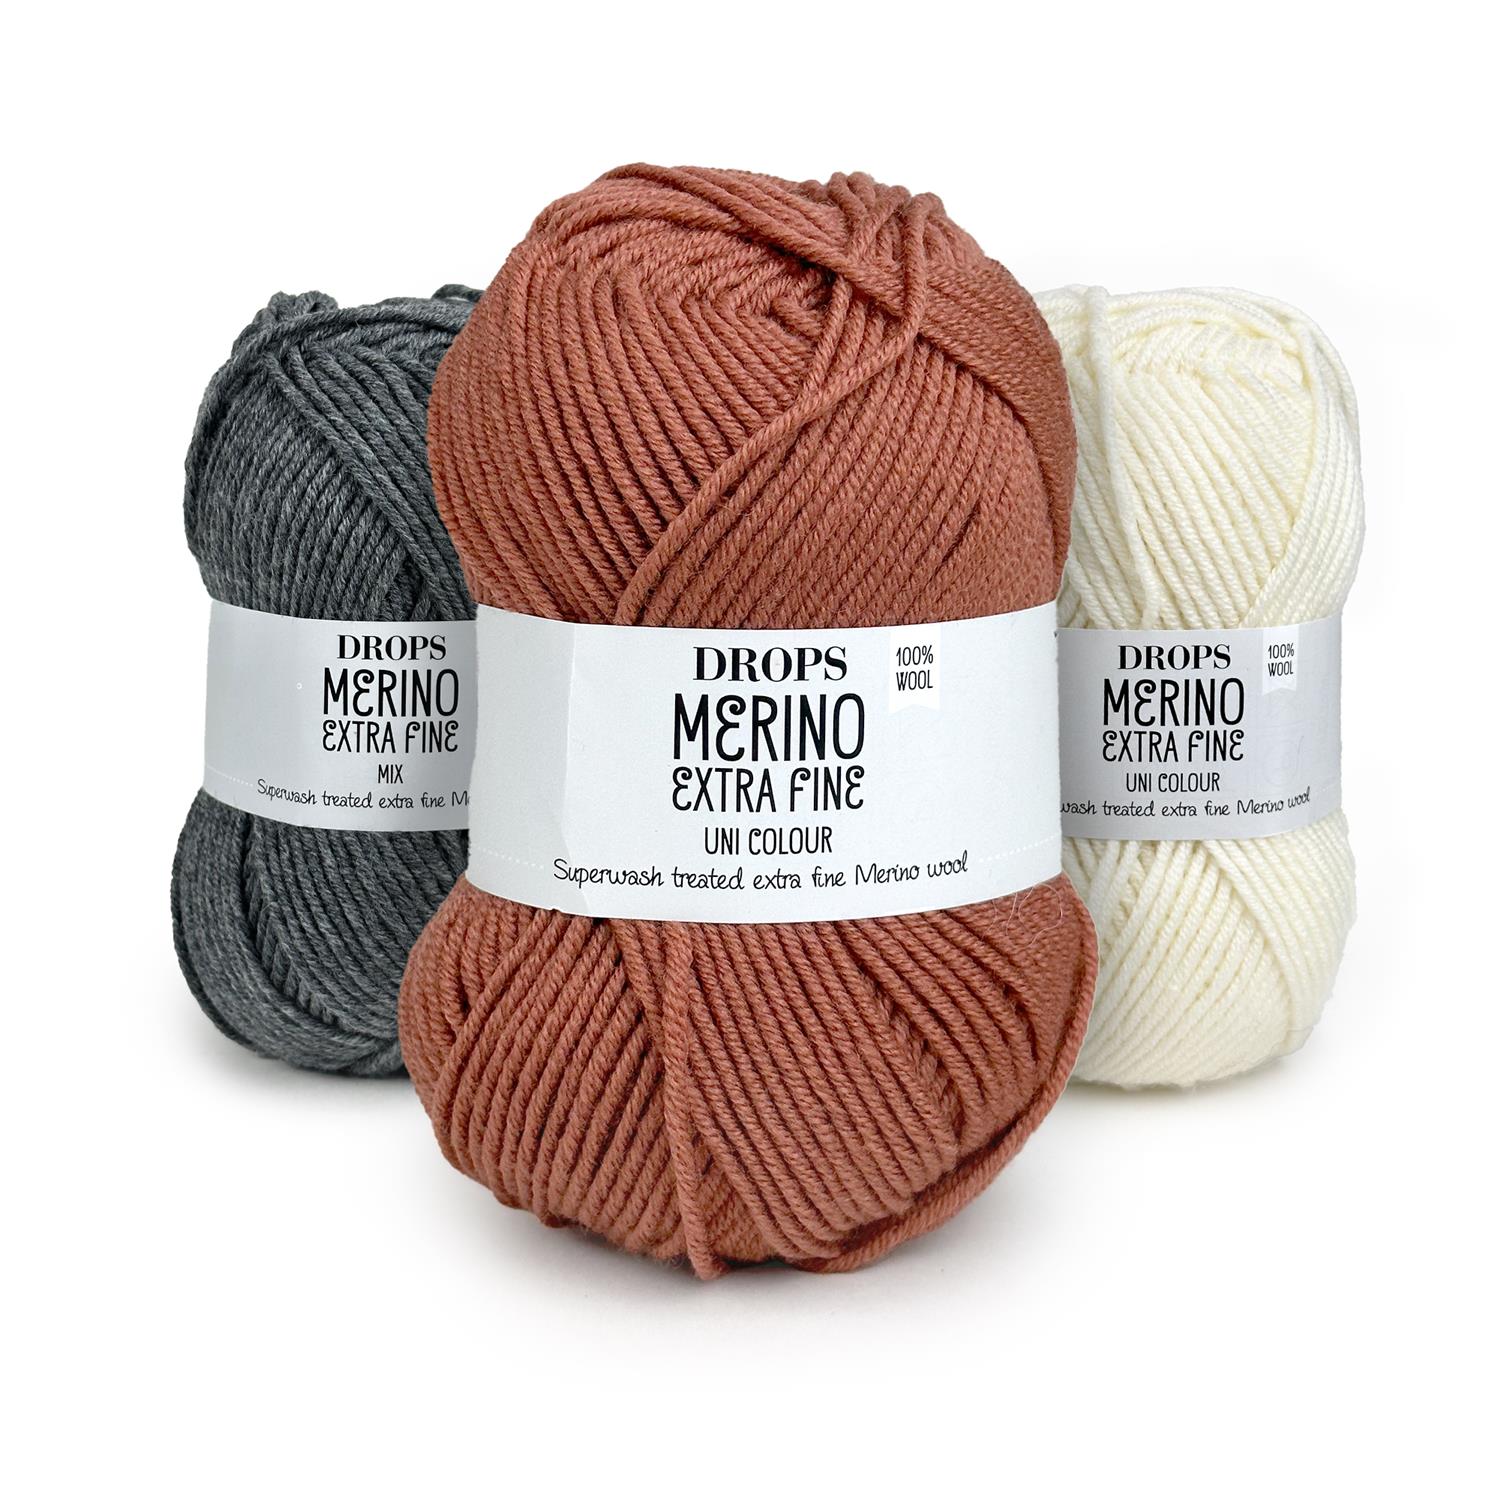 DROPS Merino Extra Fine, Uni Colour & Mix (50g/105m)